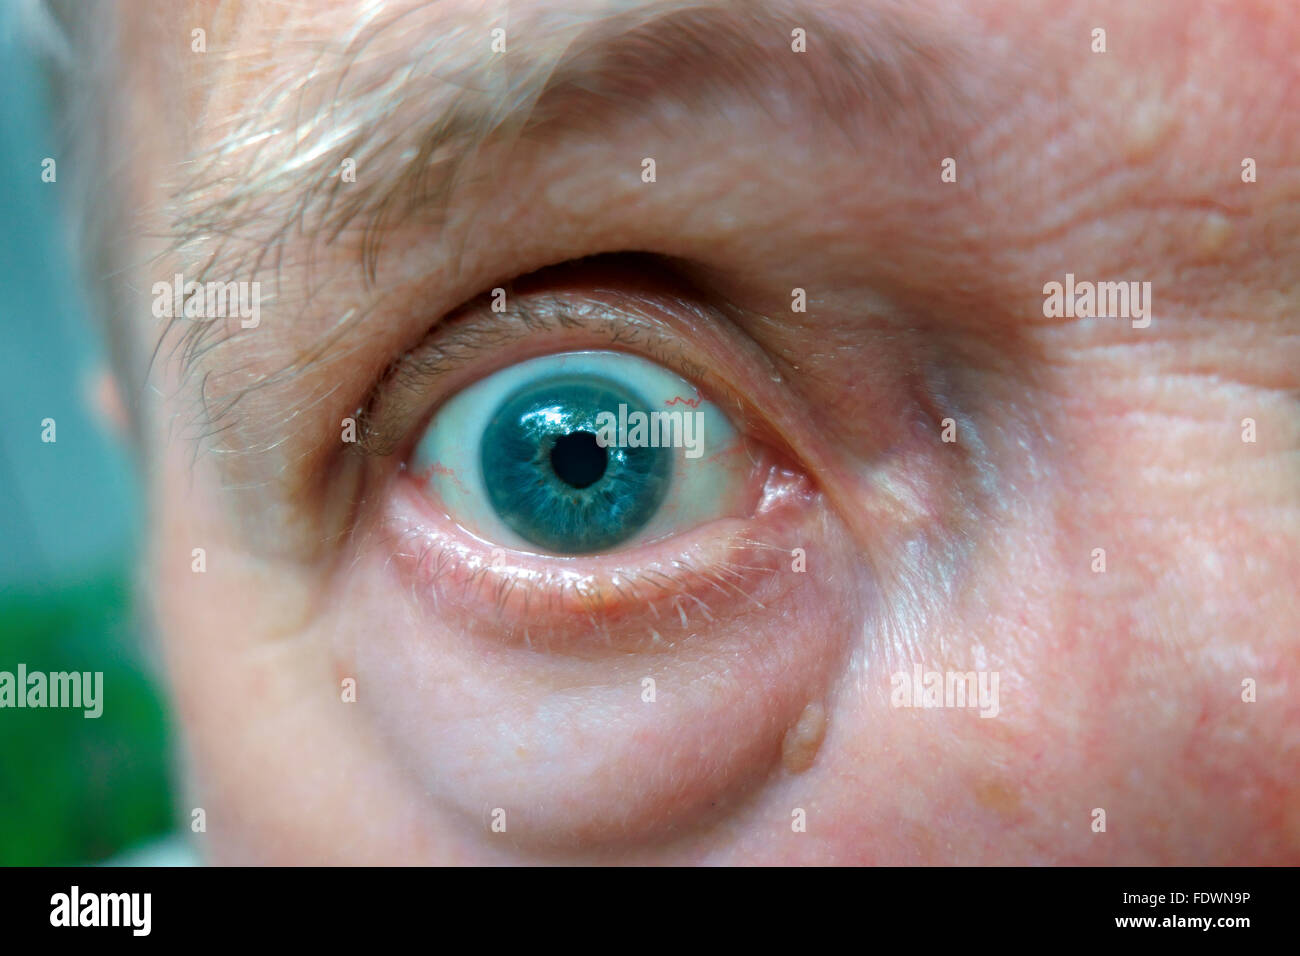 Un globo ocular y ojo azul en la cara de un hombre Foto de stock